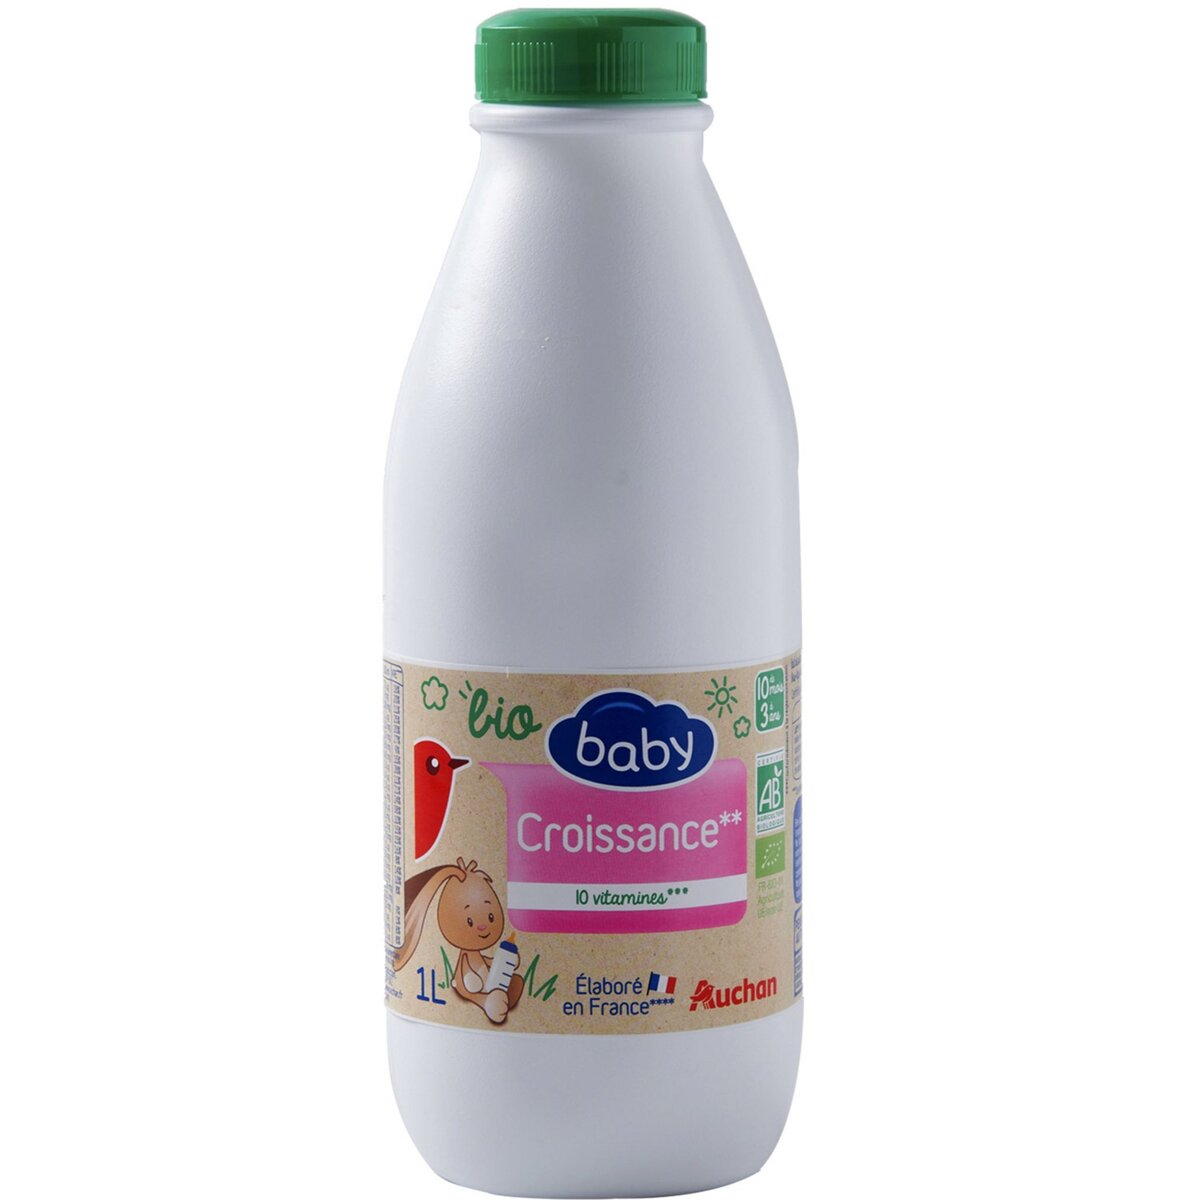 AUCHAN BABY BIO Auchan baby bio Lait de croissance 10 vitamines liquide dès 10 mois 1l 1l